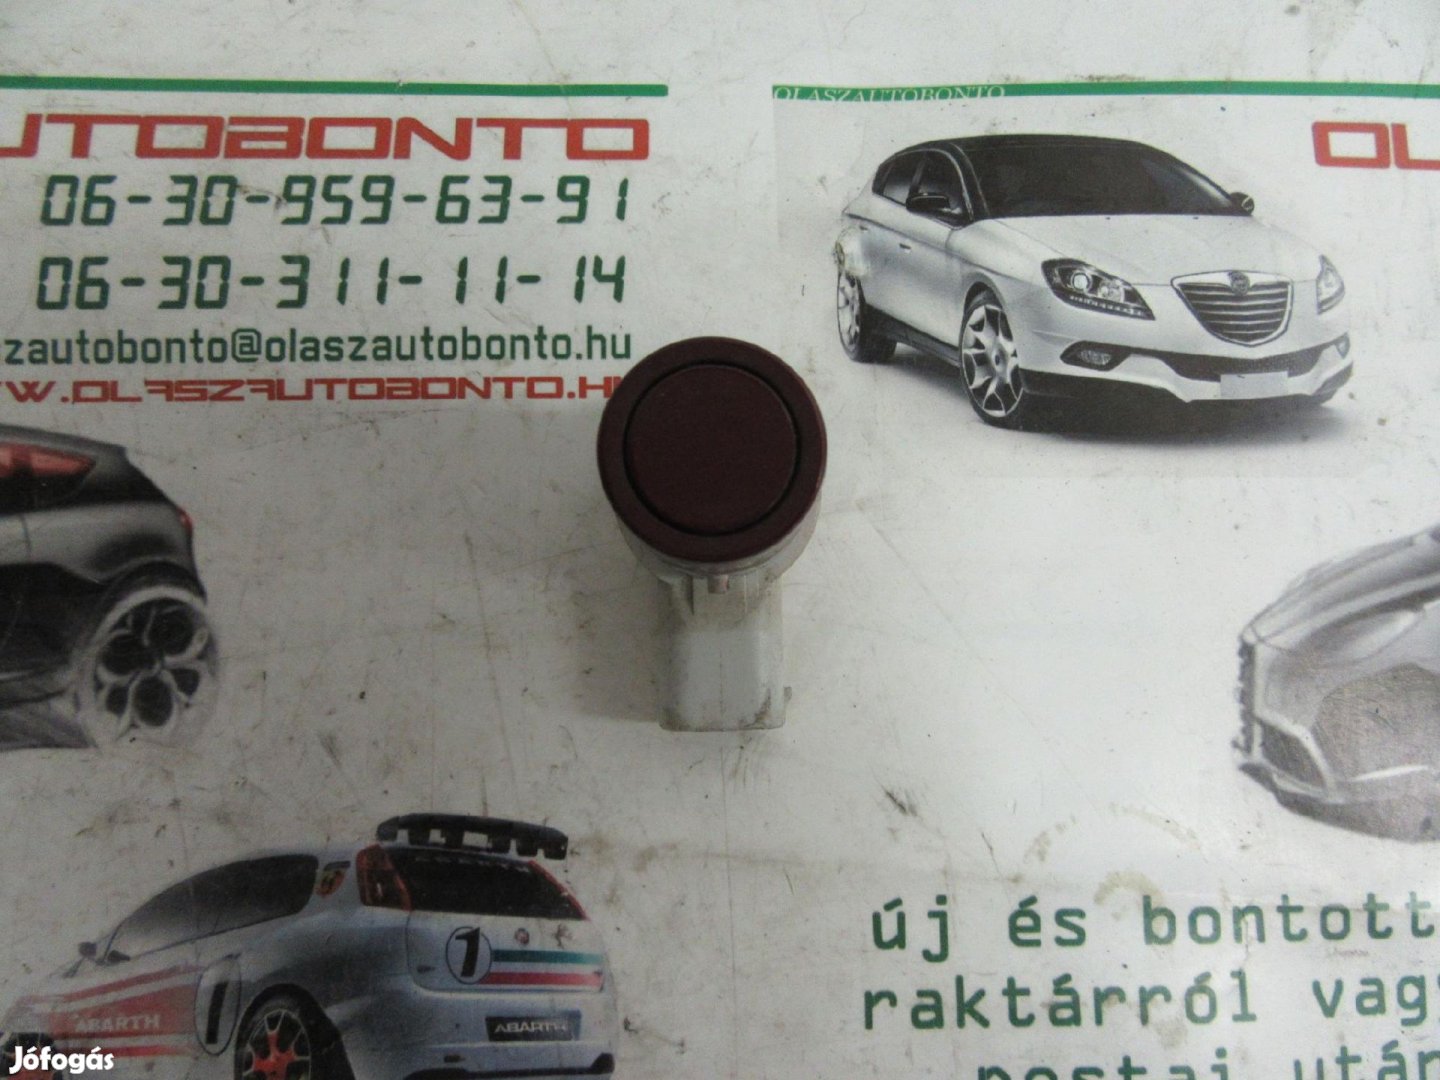 Alfa Romeo 159/Fiat Croma 735388363 számú tolató szenzor